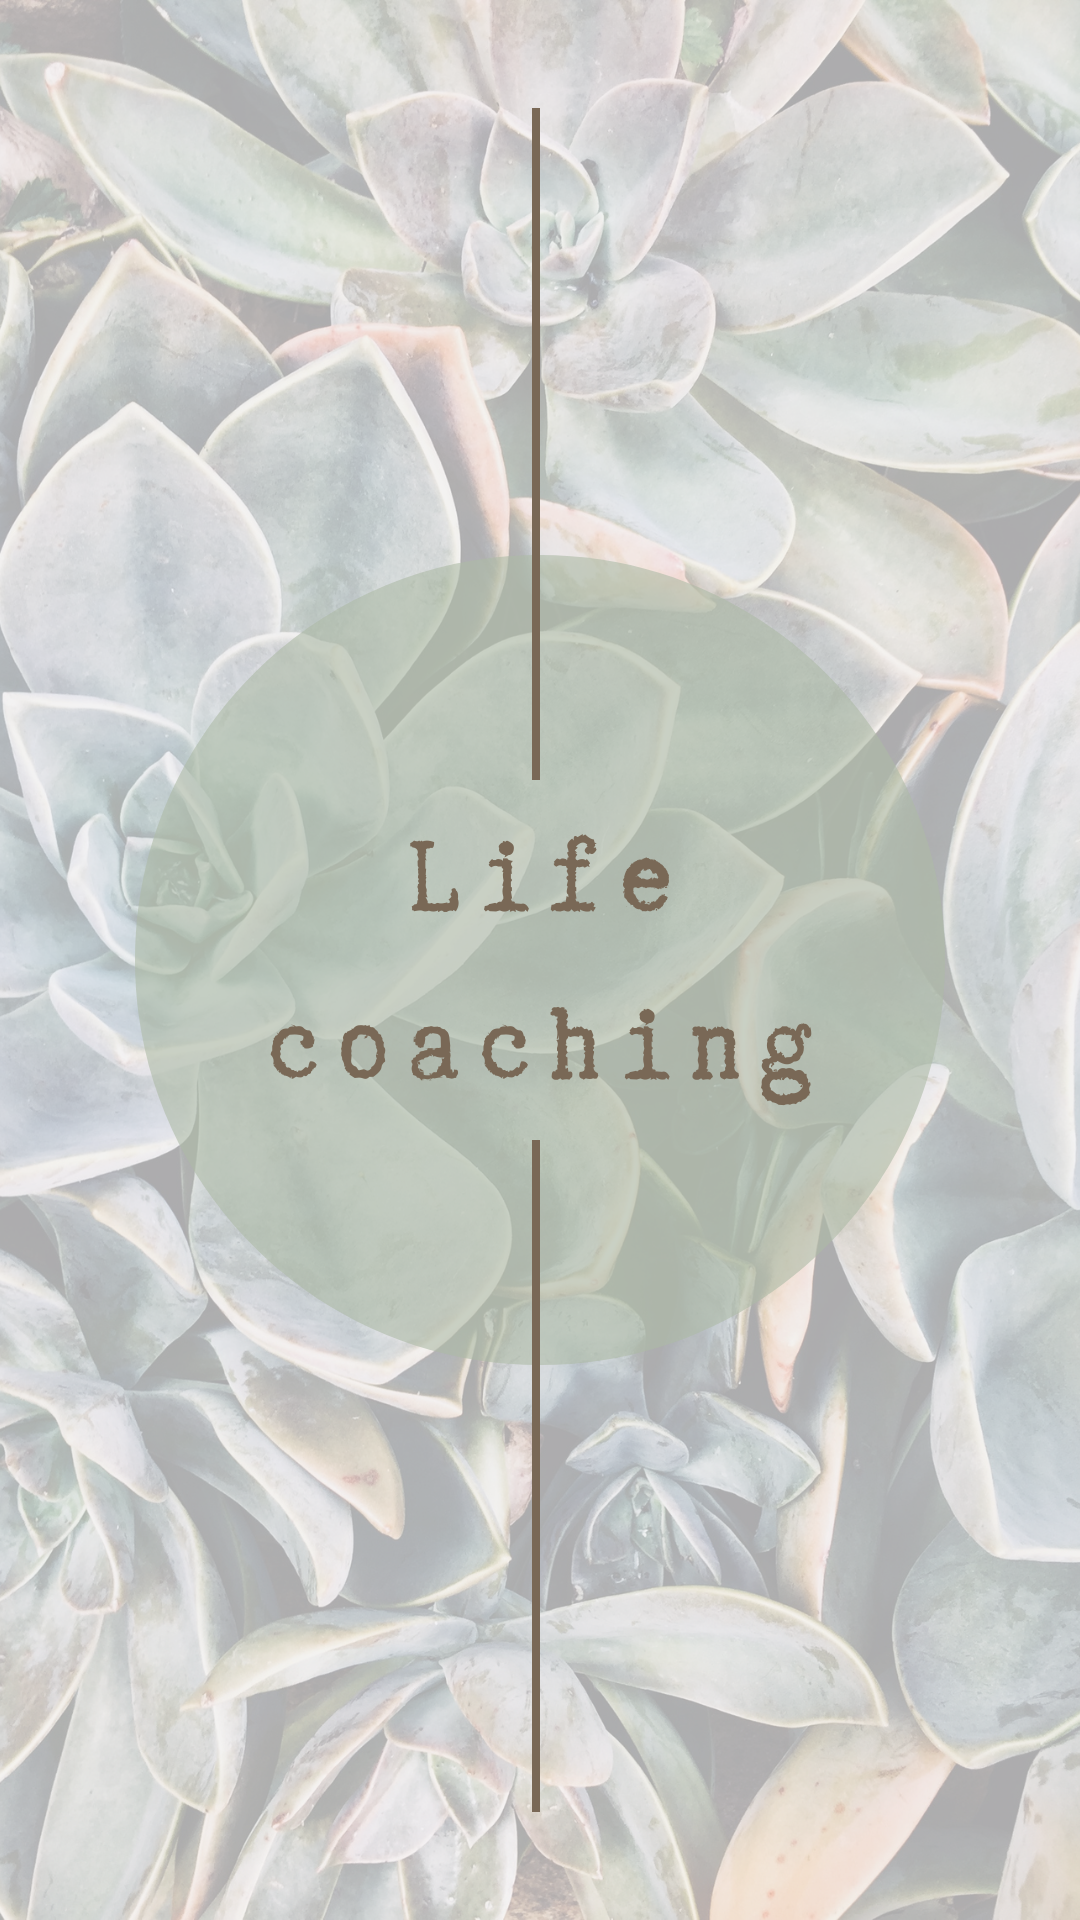 Life coaching Wabi Sabi coaching